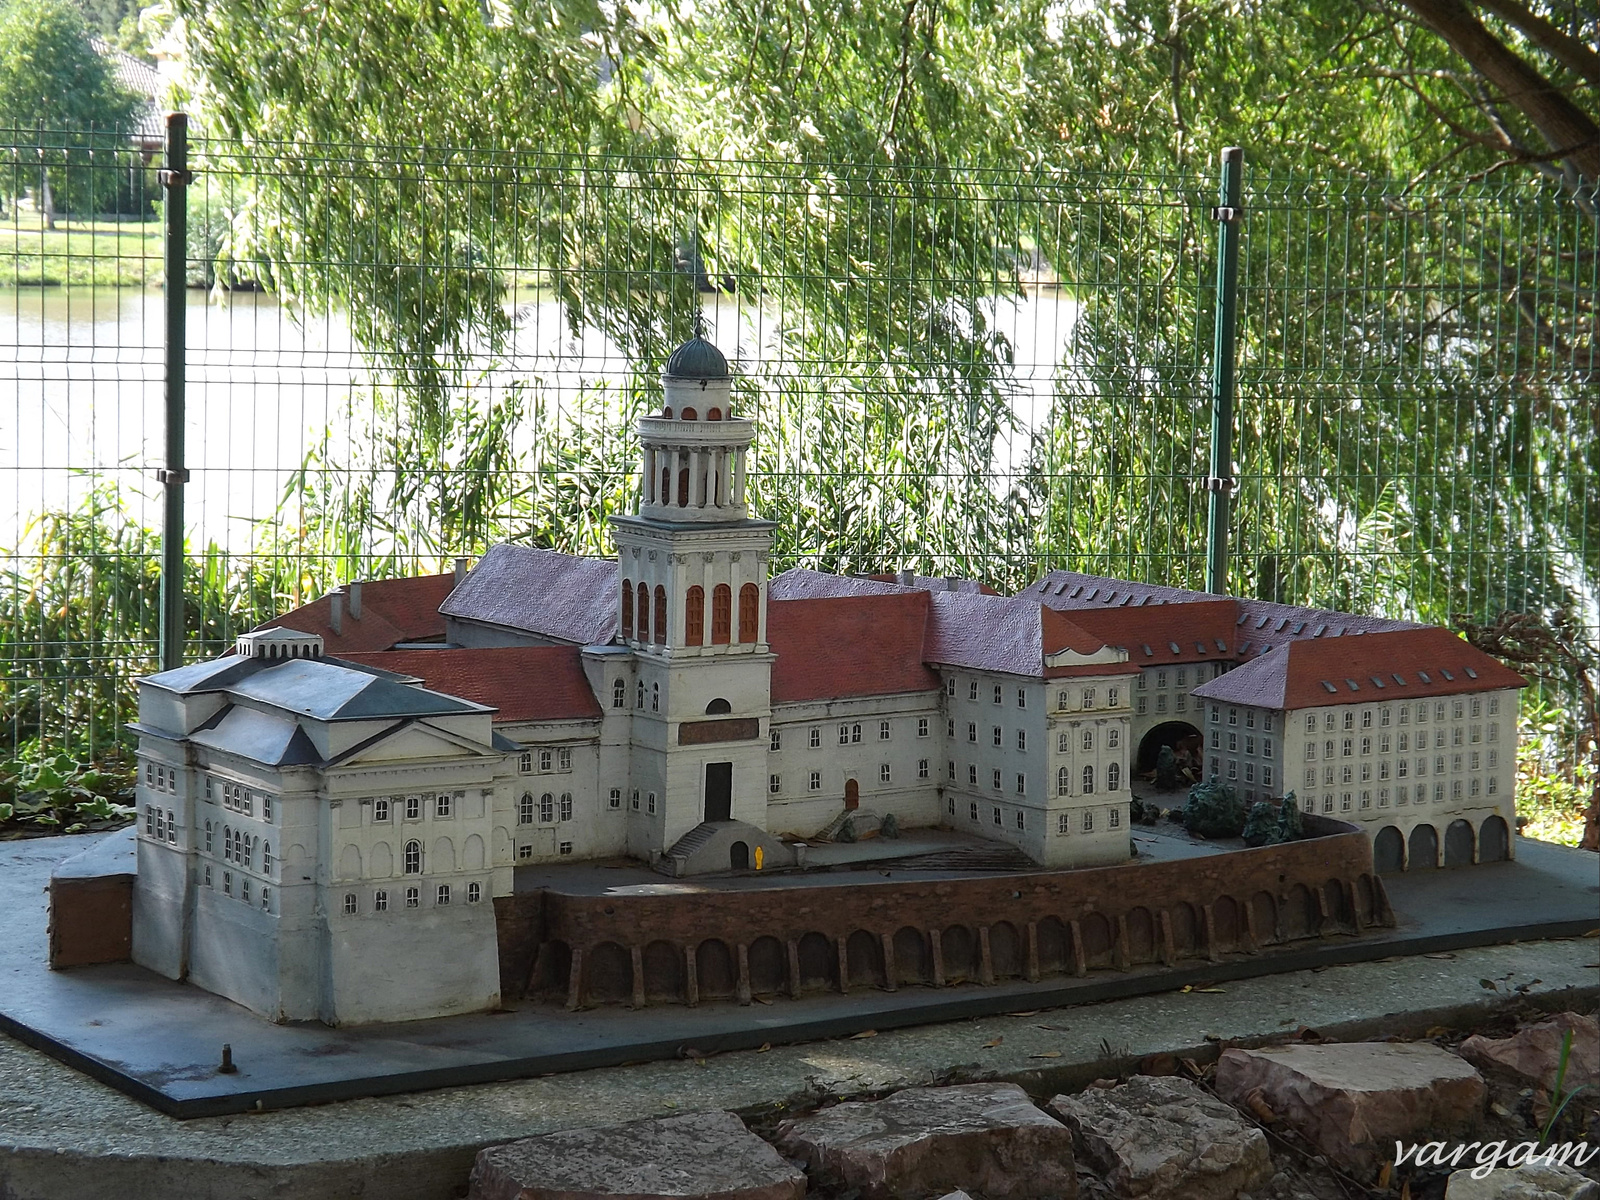 Kisbér Mini Magyarország Pannonhalmi Apátság épülete kicsiben